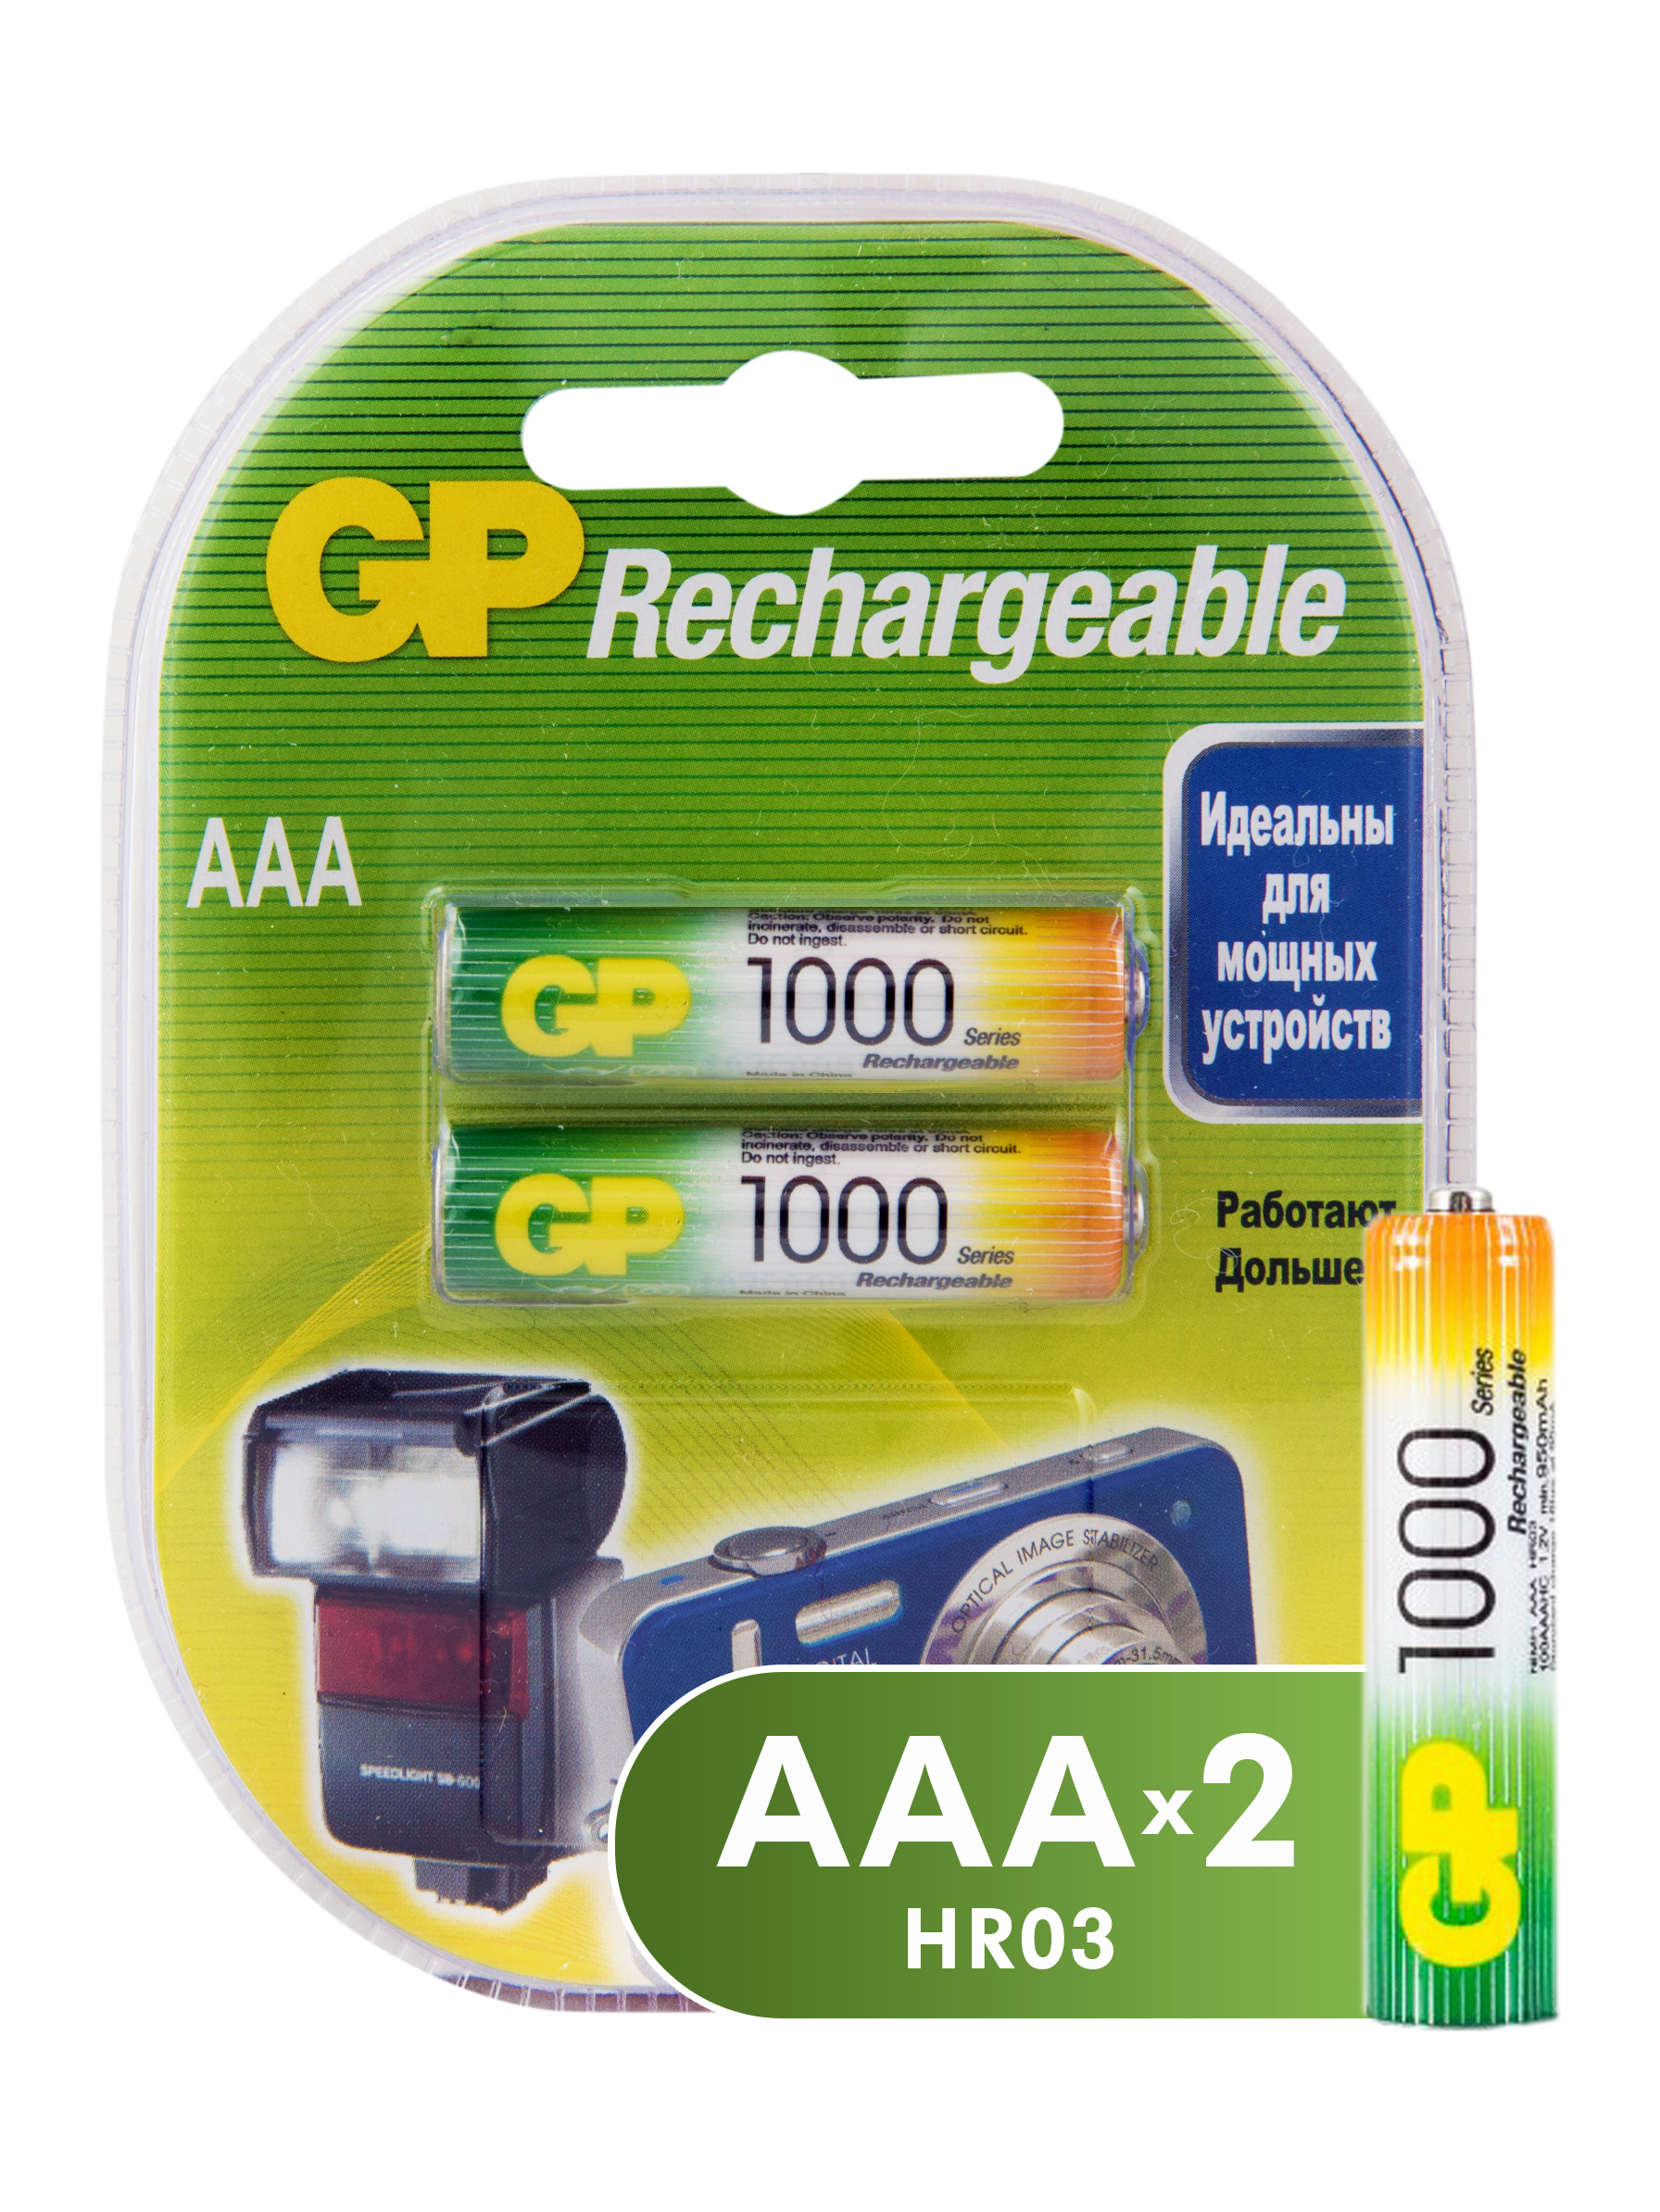 Аккумуляторы GP Batteries перезаряжаемые, AAA, 930 мАч, 2 шт